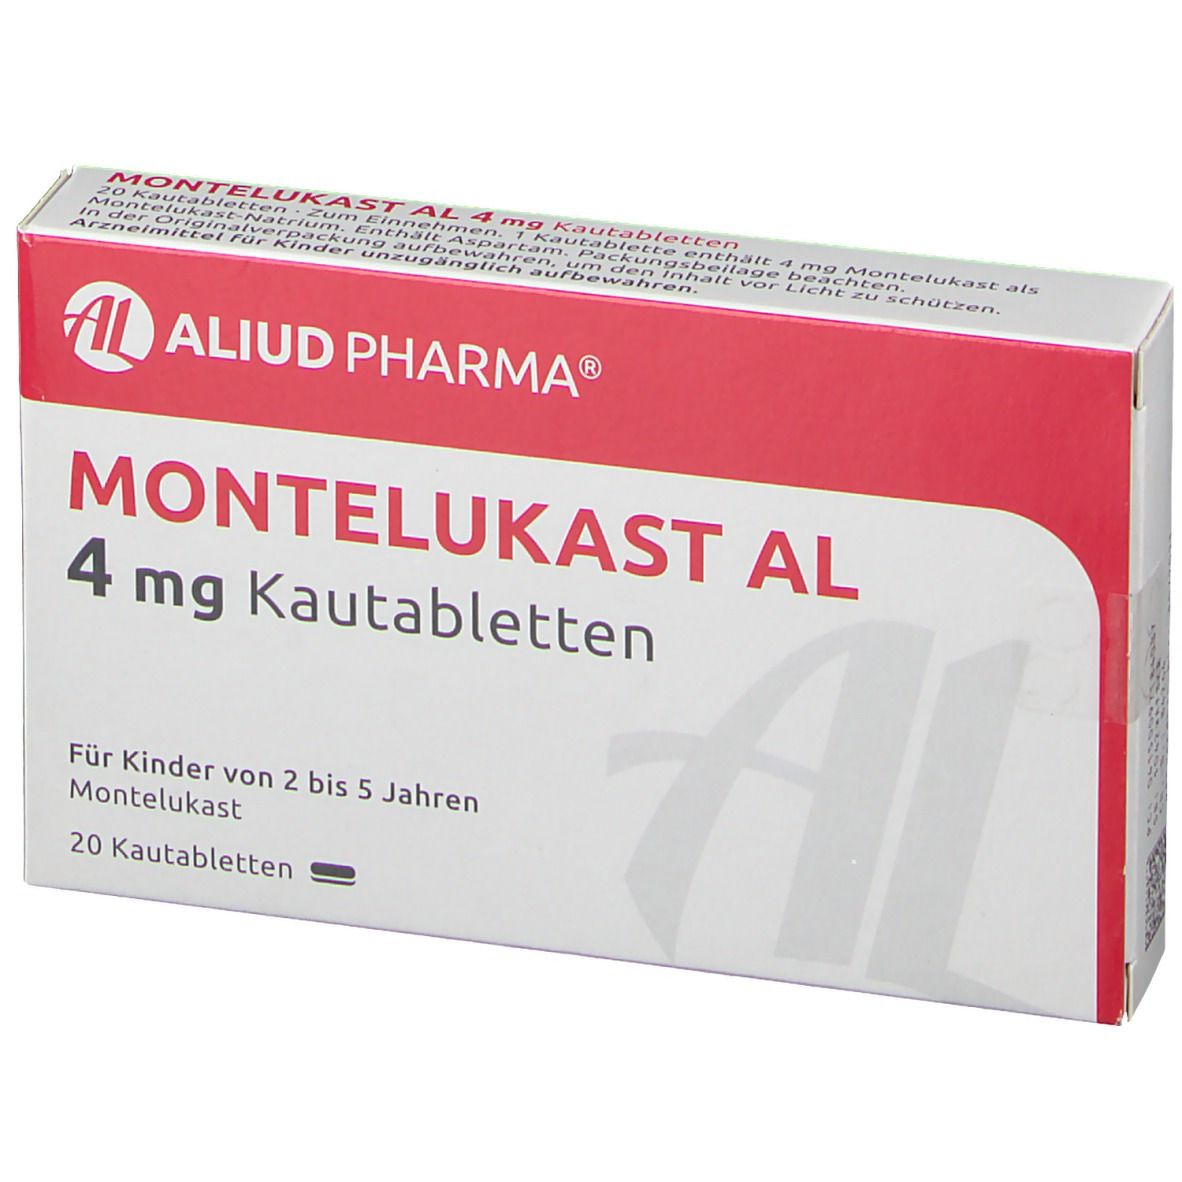 Montelukast AL 4 mg